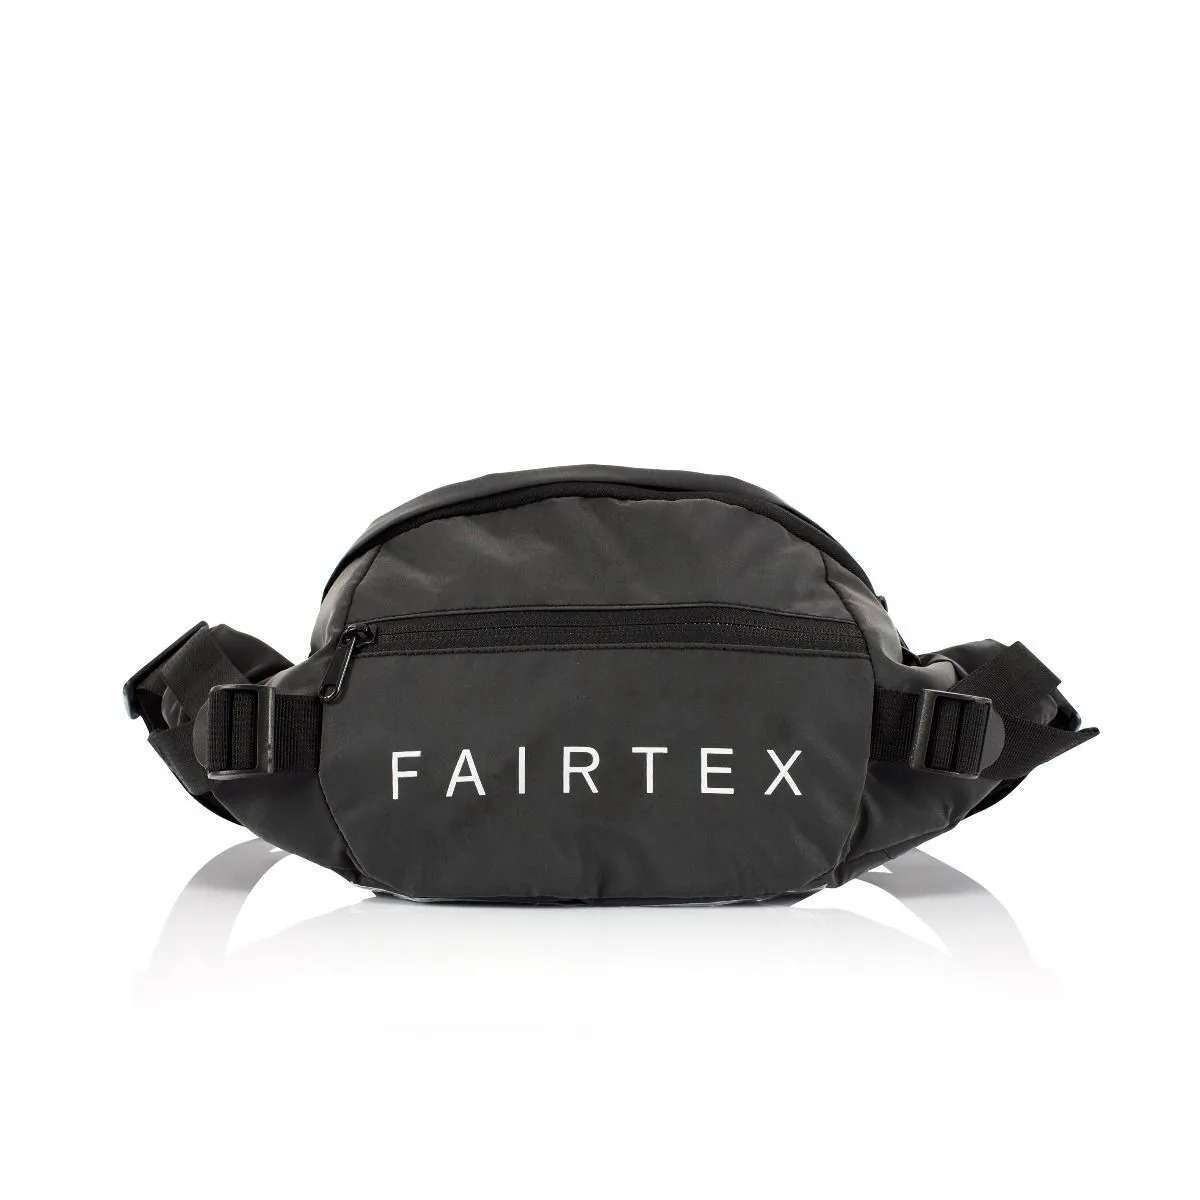 FAIRTEX - CROSS BODY BAG